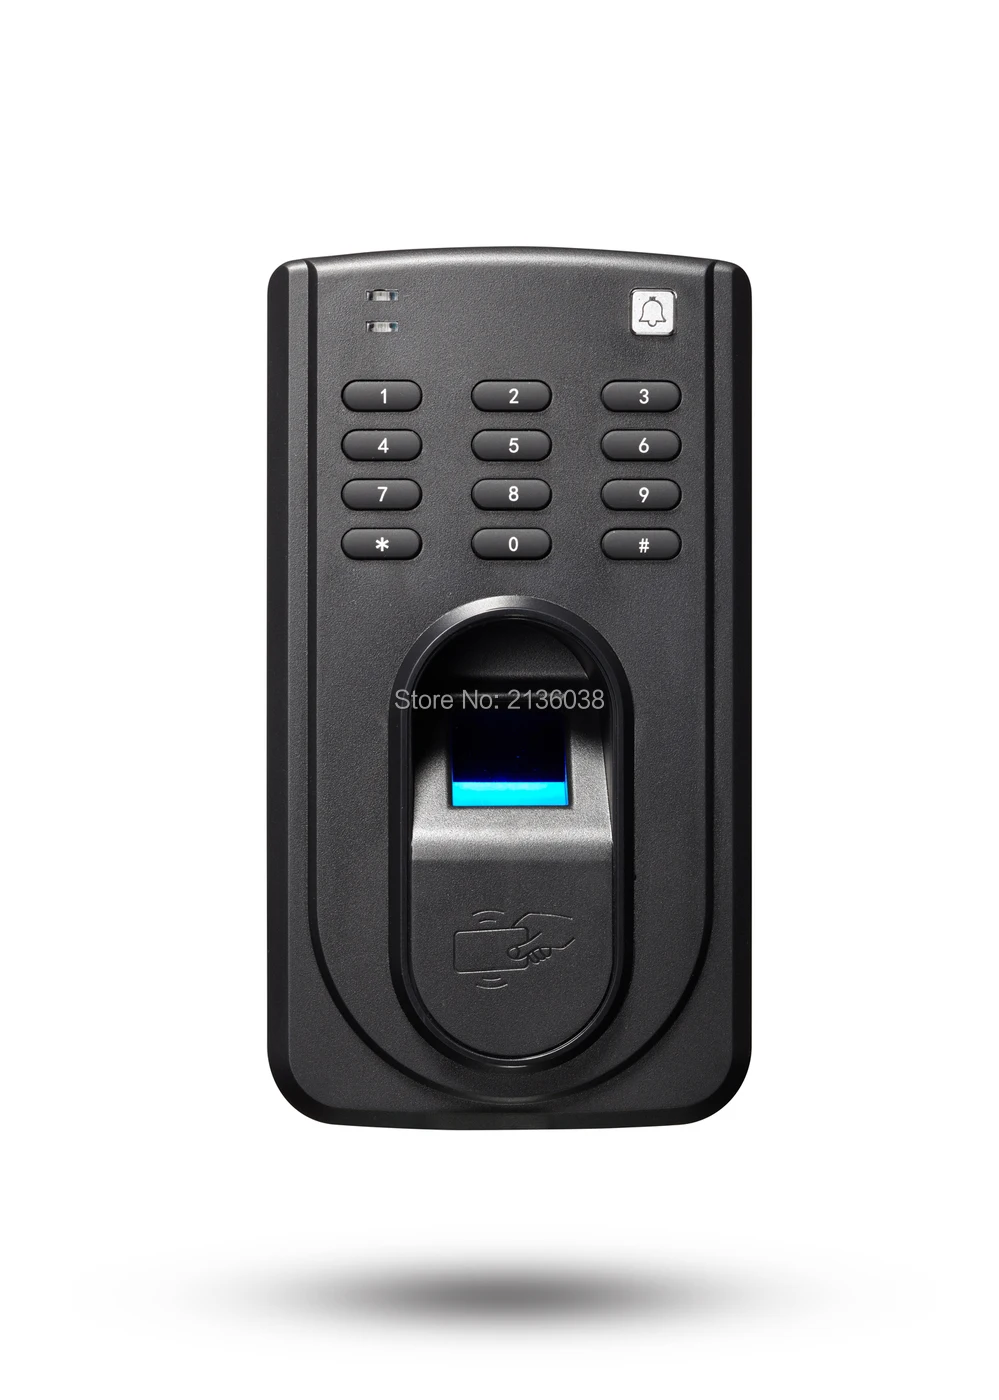 S10 биометрическая дактилоскопическая система контрольные часы, засекают время присутствия и доступ Управление RS485 RFID 125 кГц карта считывания двери устройство Биометрического Контроля Доступа